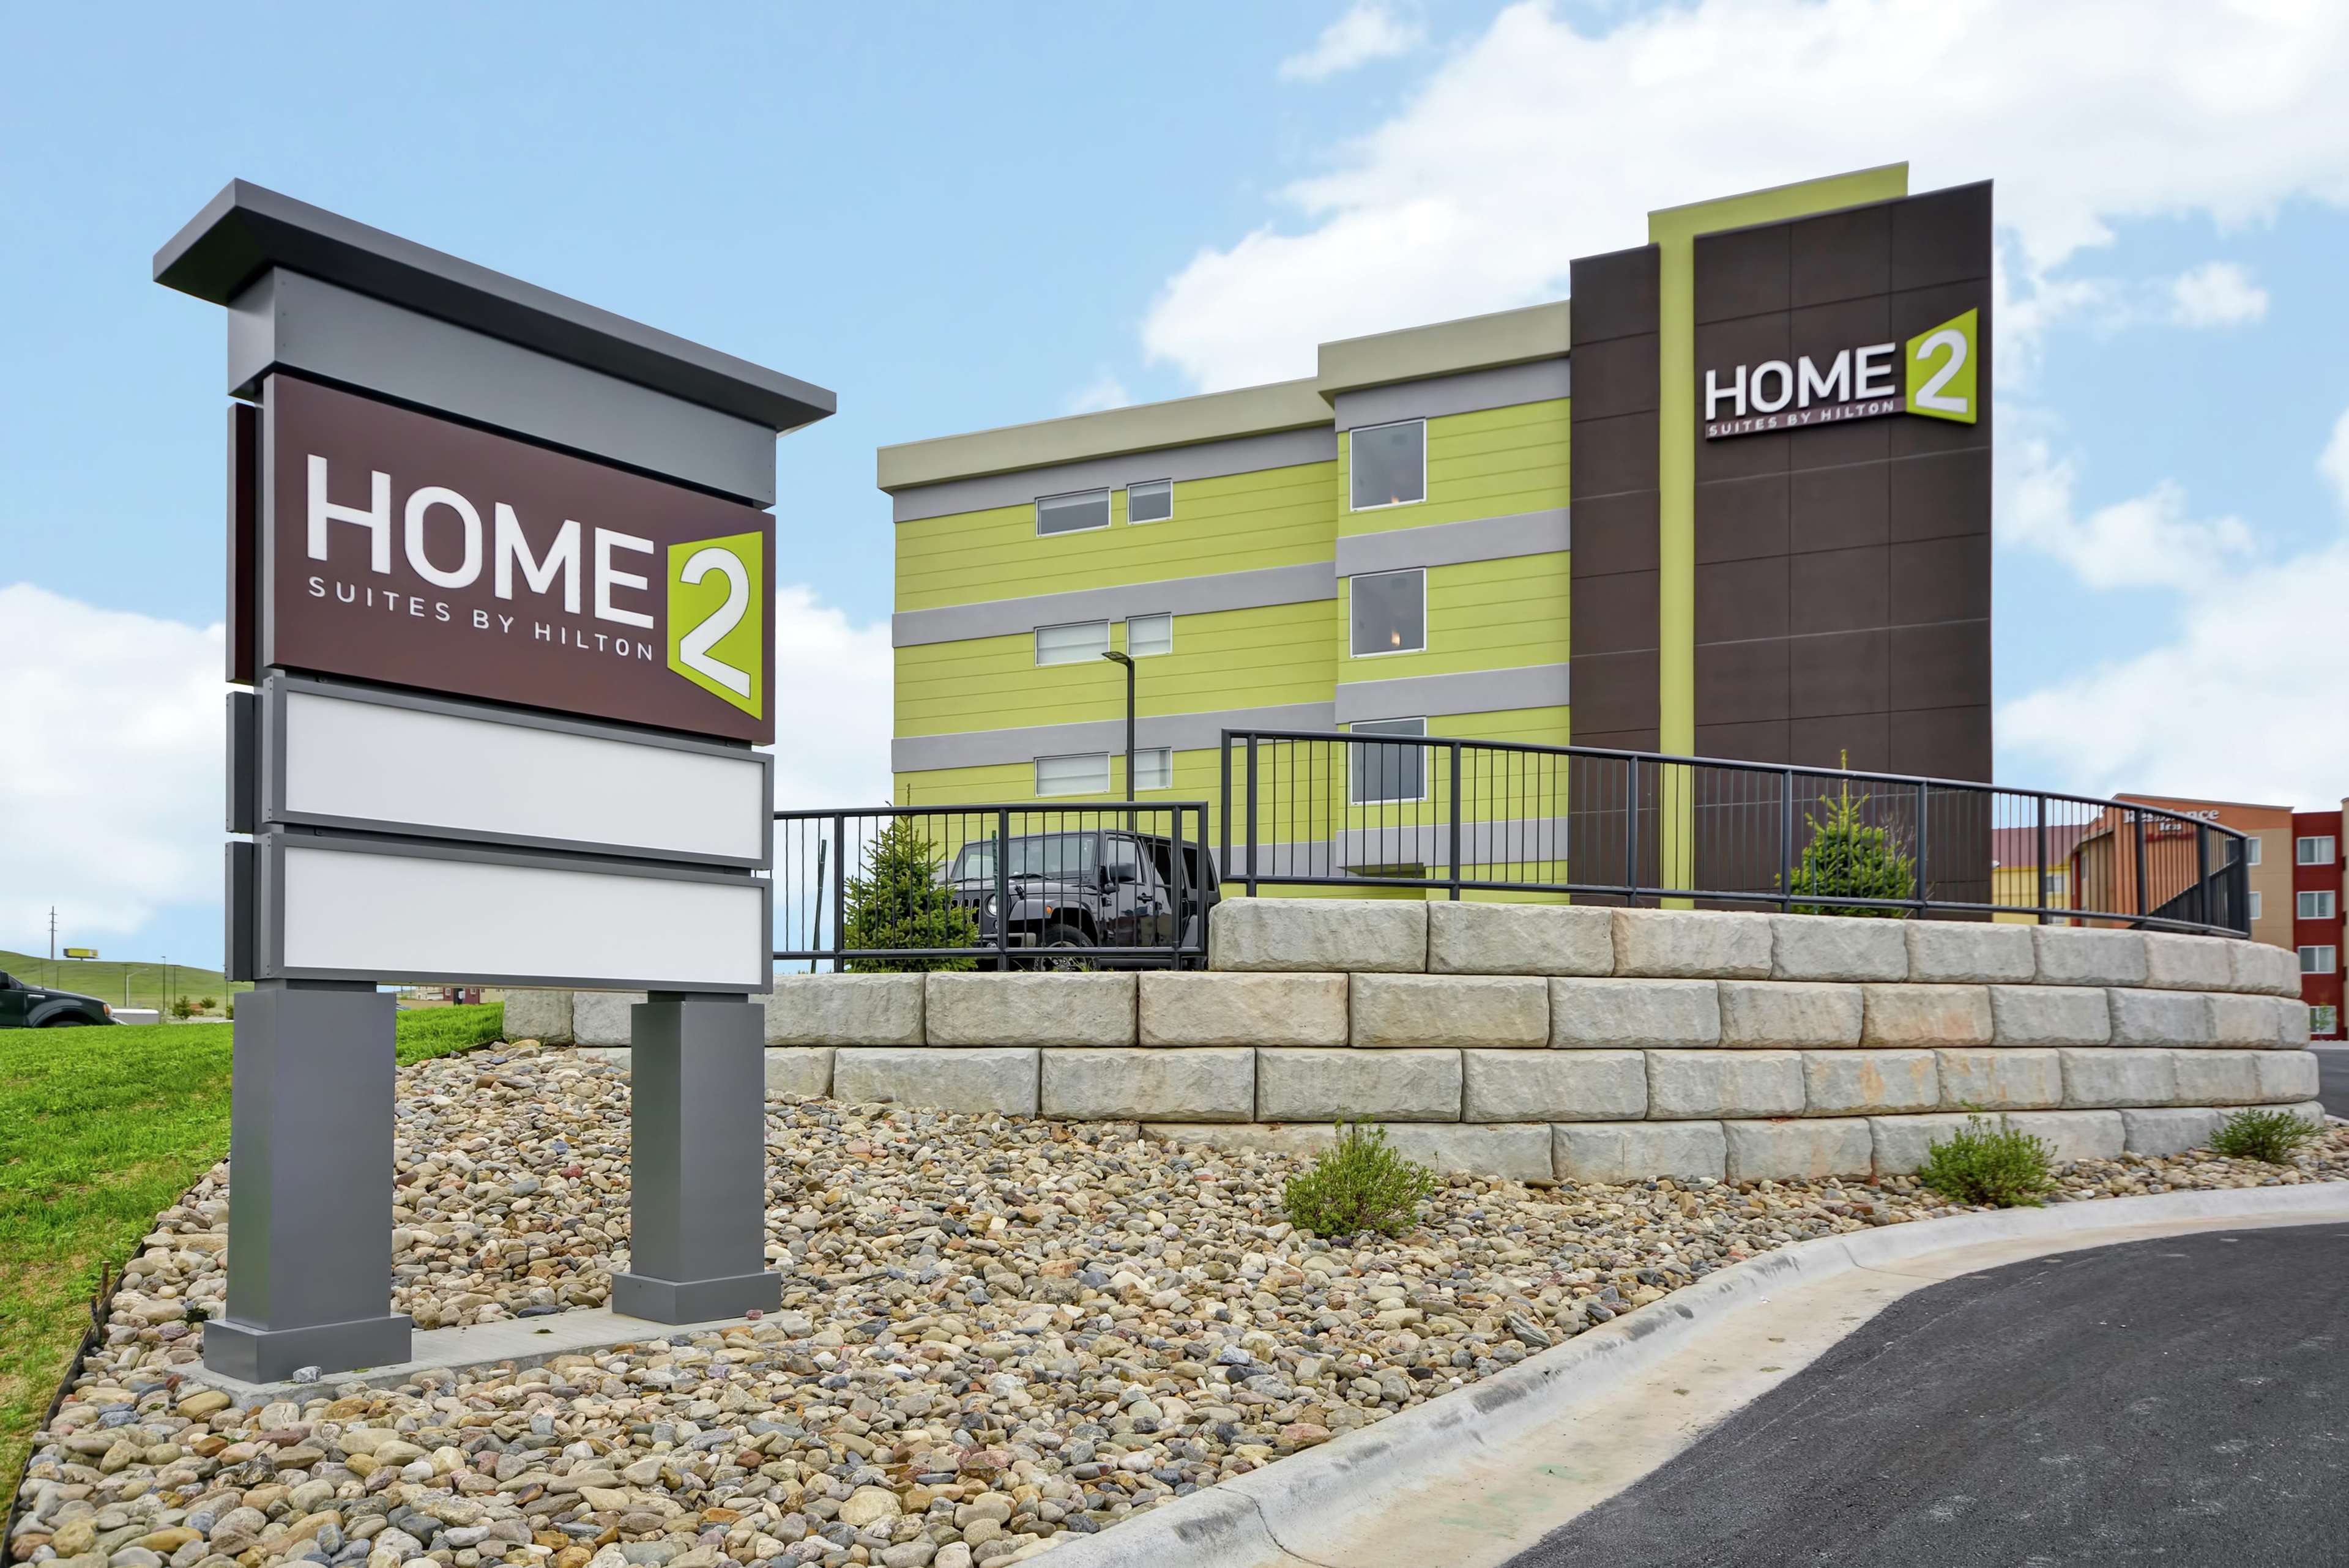 Home2 Suites by Hilton Rapid City.